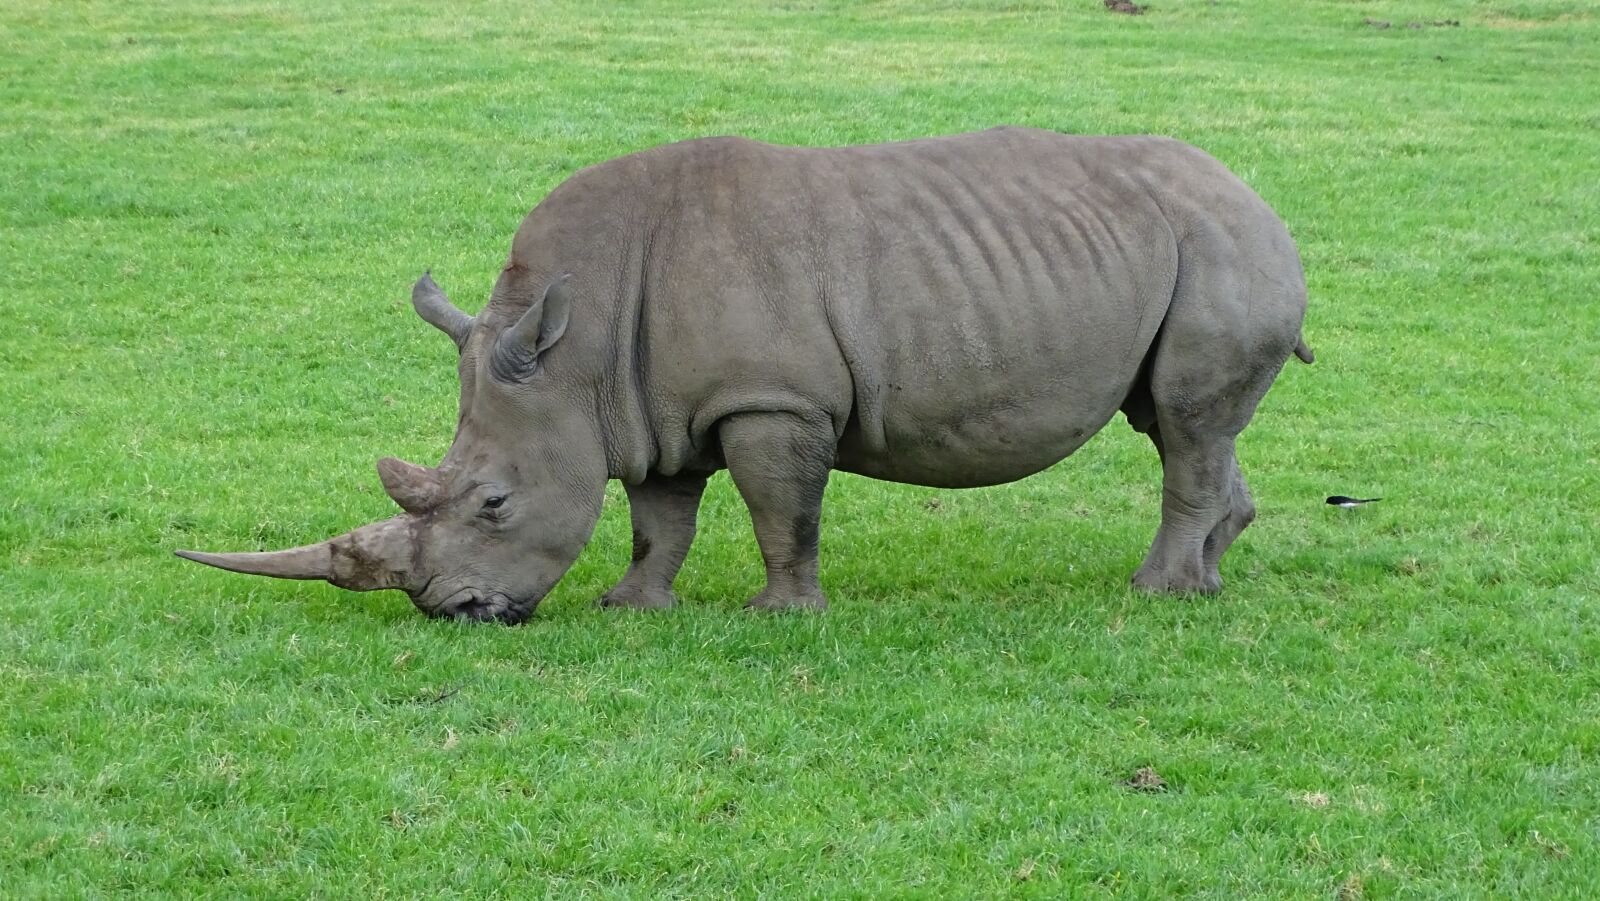 Sony Cyber-shot DSC-HX400V sample photo. Rhino, rhinoceros, wild photography